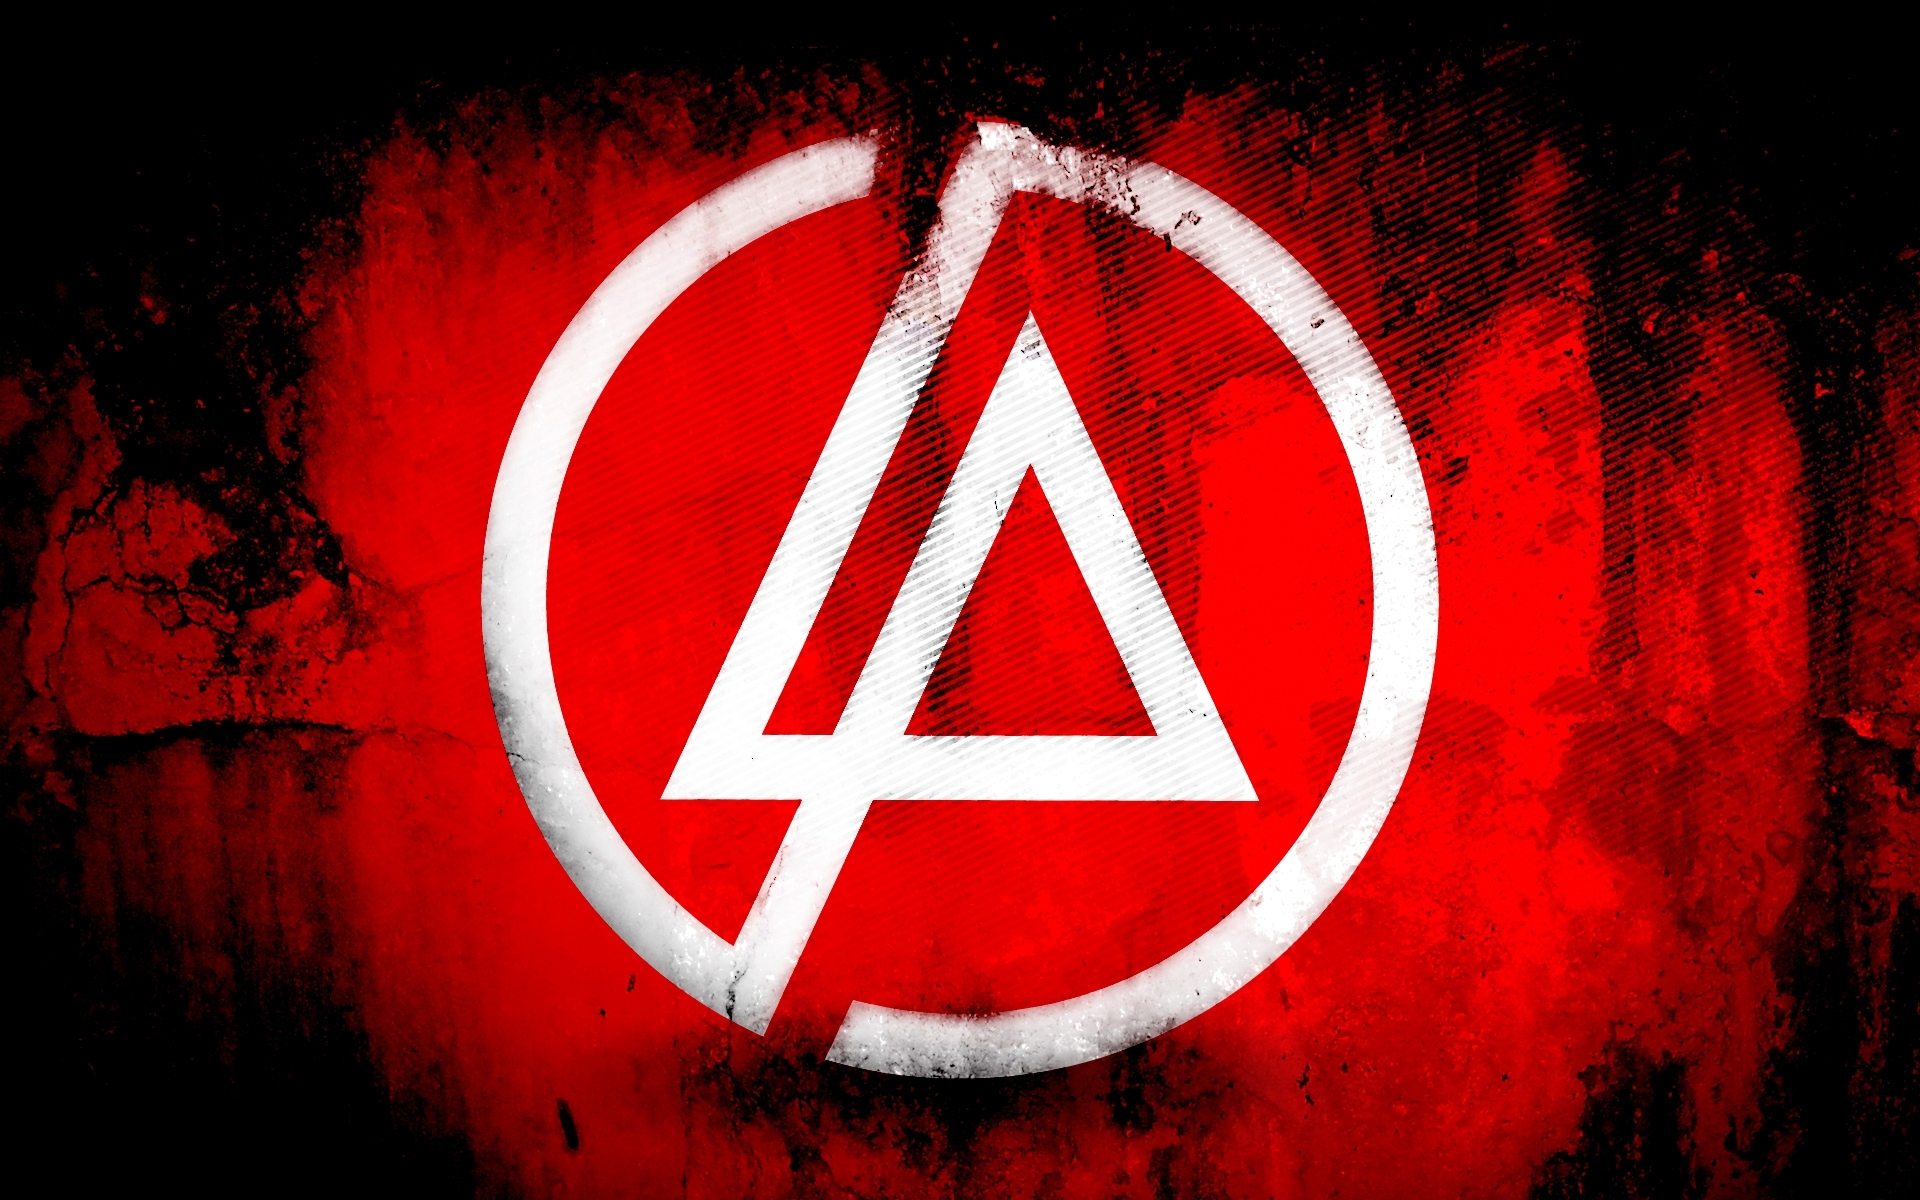 Картинки Linkin park, символ, фон, треугольник, круг фото и обои на рабочий стол